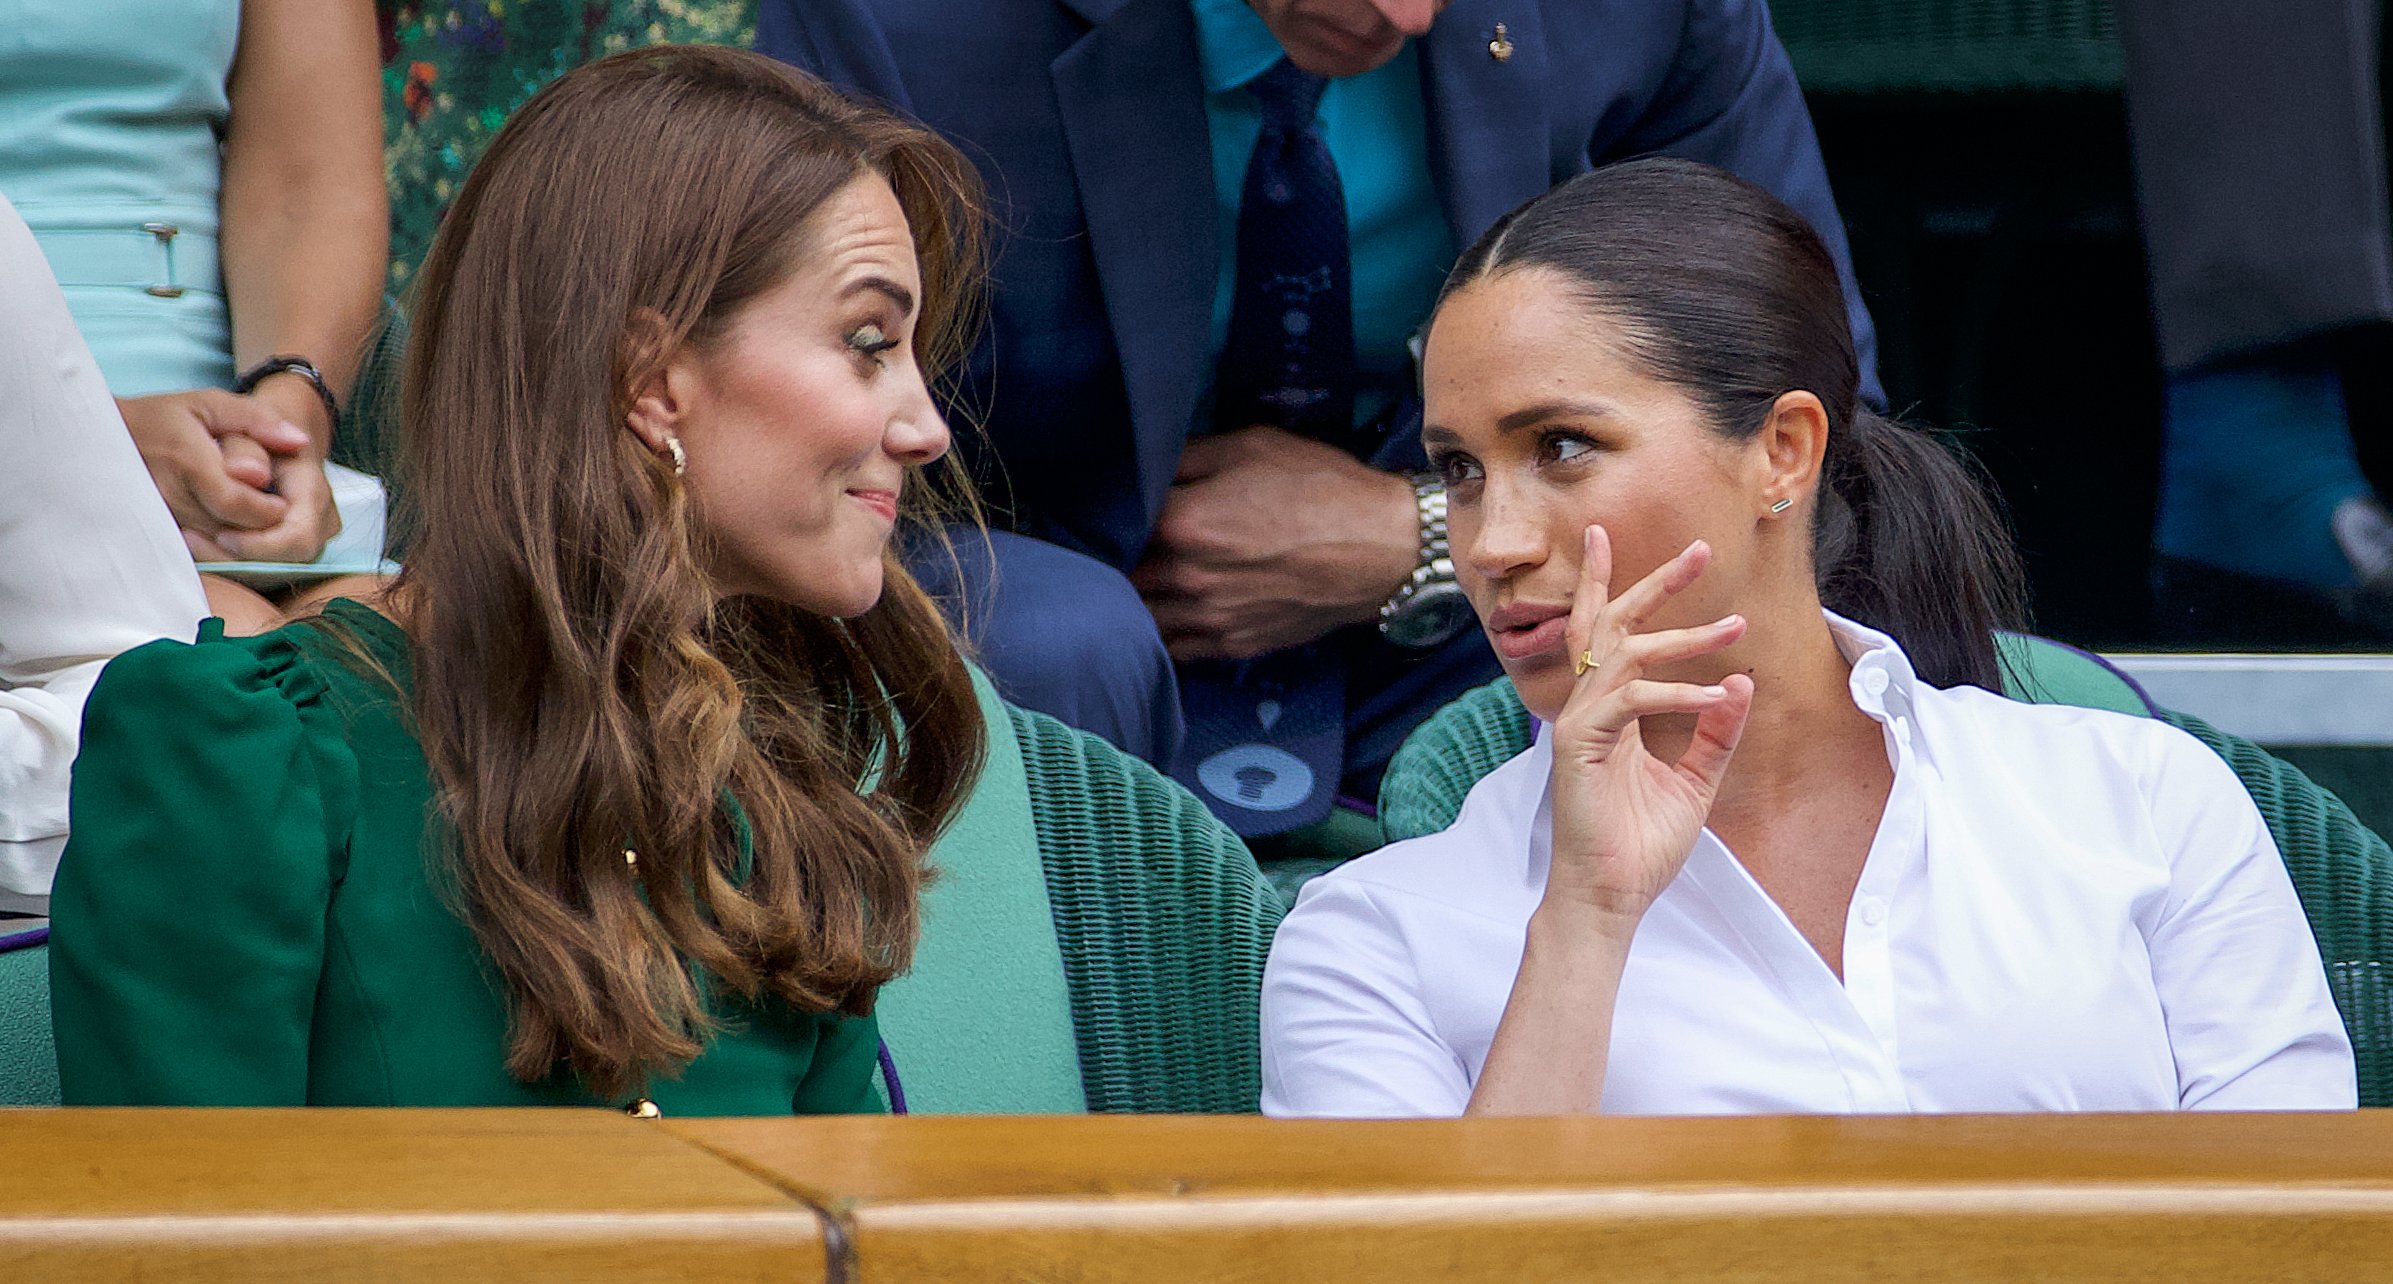 Kate Middleton und Meghan Markle in der Royal Box auf dem Centre Court während der Wimbledon Lawn Tennis Championships im All England Lawn Tennis and Croquet Club in Wimbledon am 13. Juli 2019 in London, England. | Quelle: Getty Images